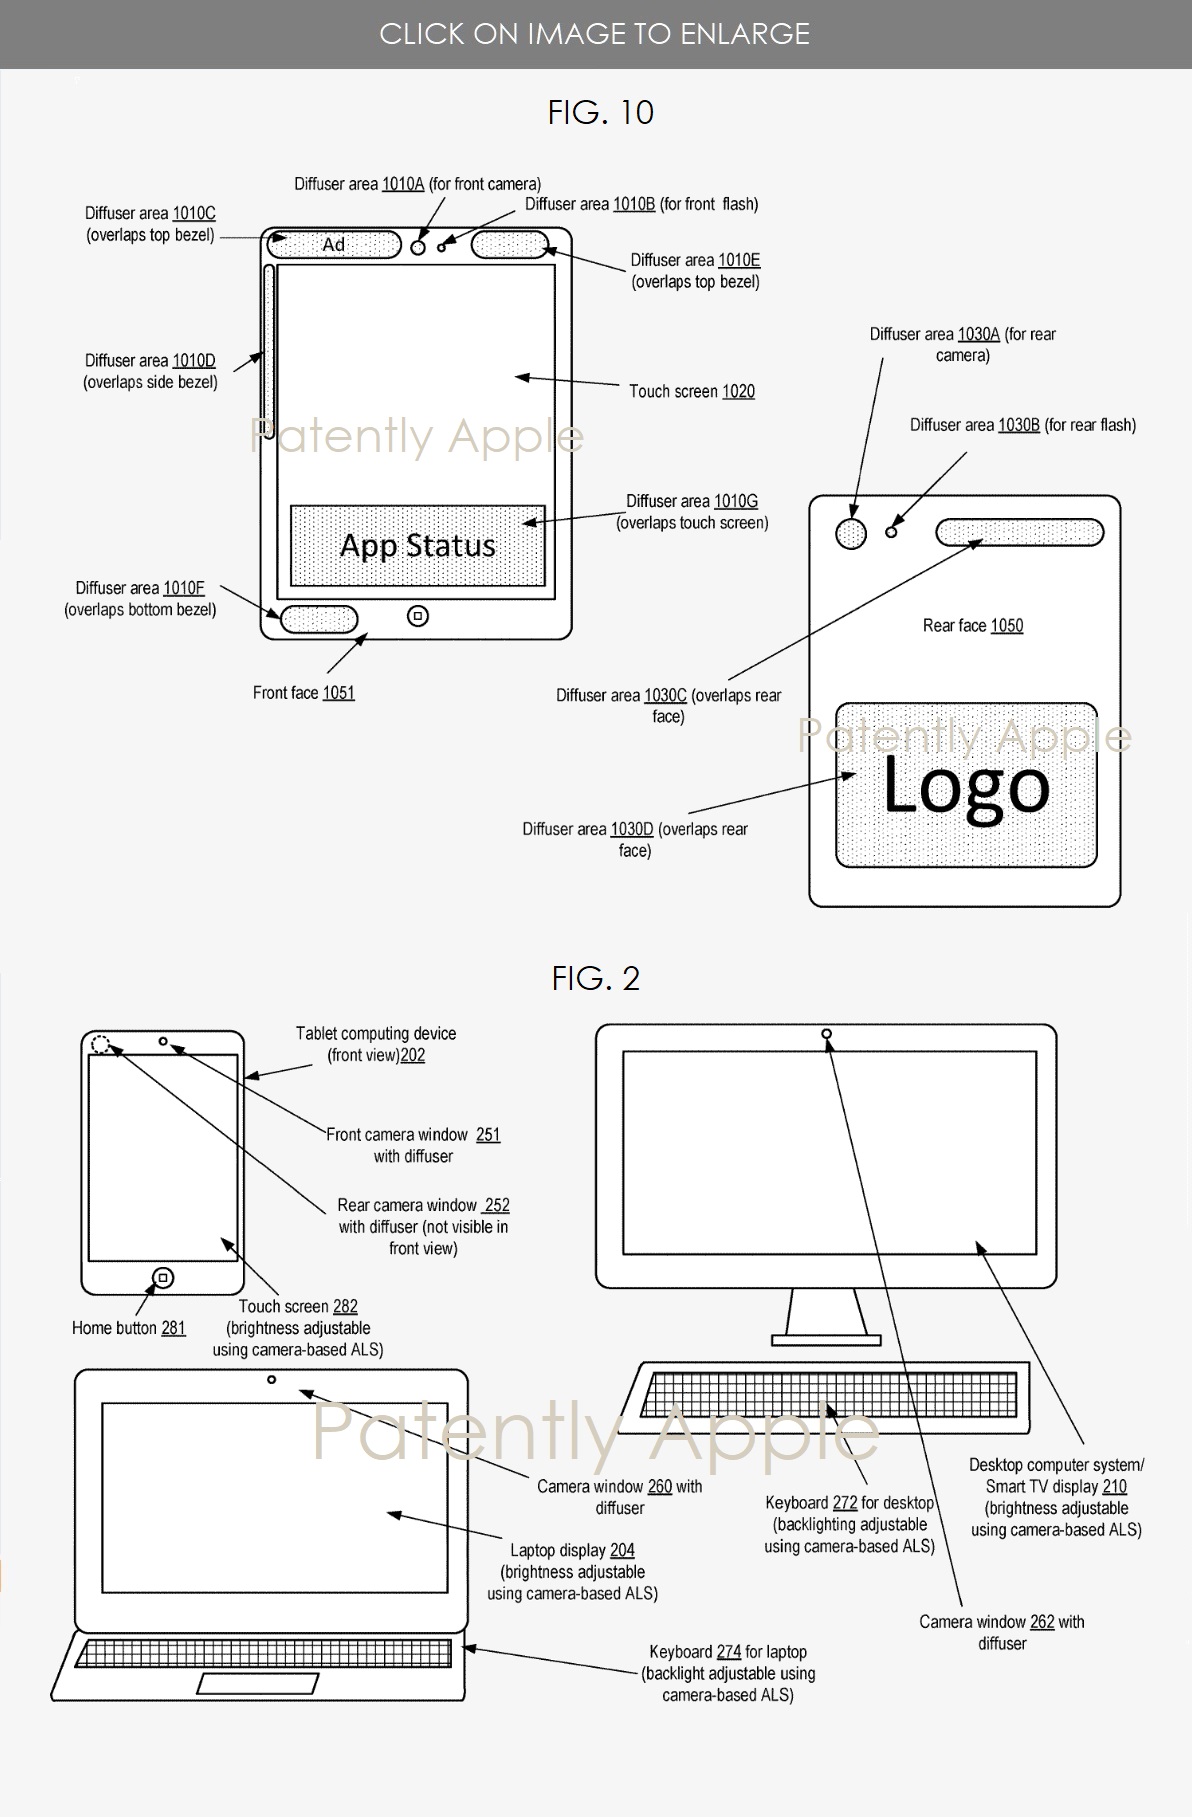 Apple ha brevetto dispositivi con la possibilità di mostrare messaggi nelle aree esterna del display